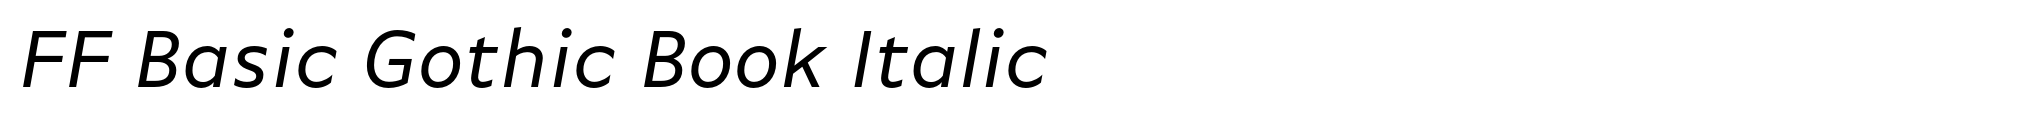 FF Basic Gothic Book Italic image